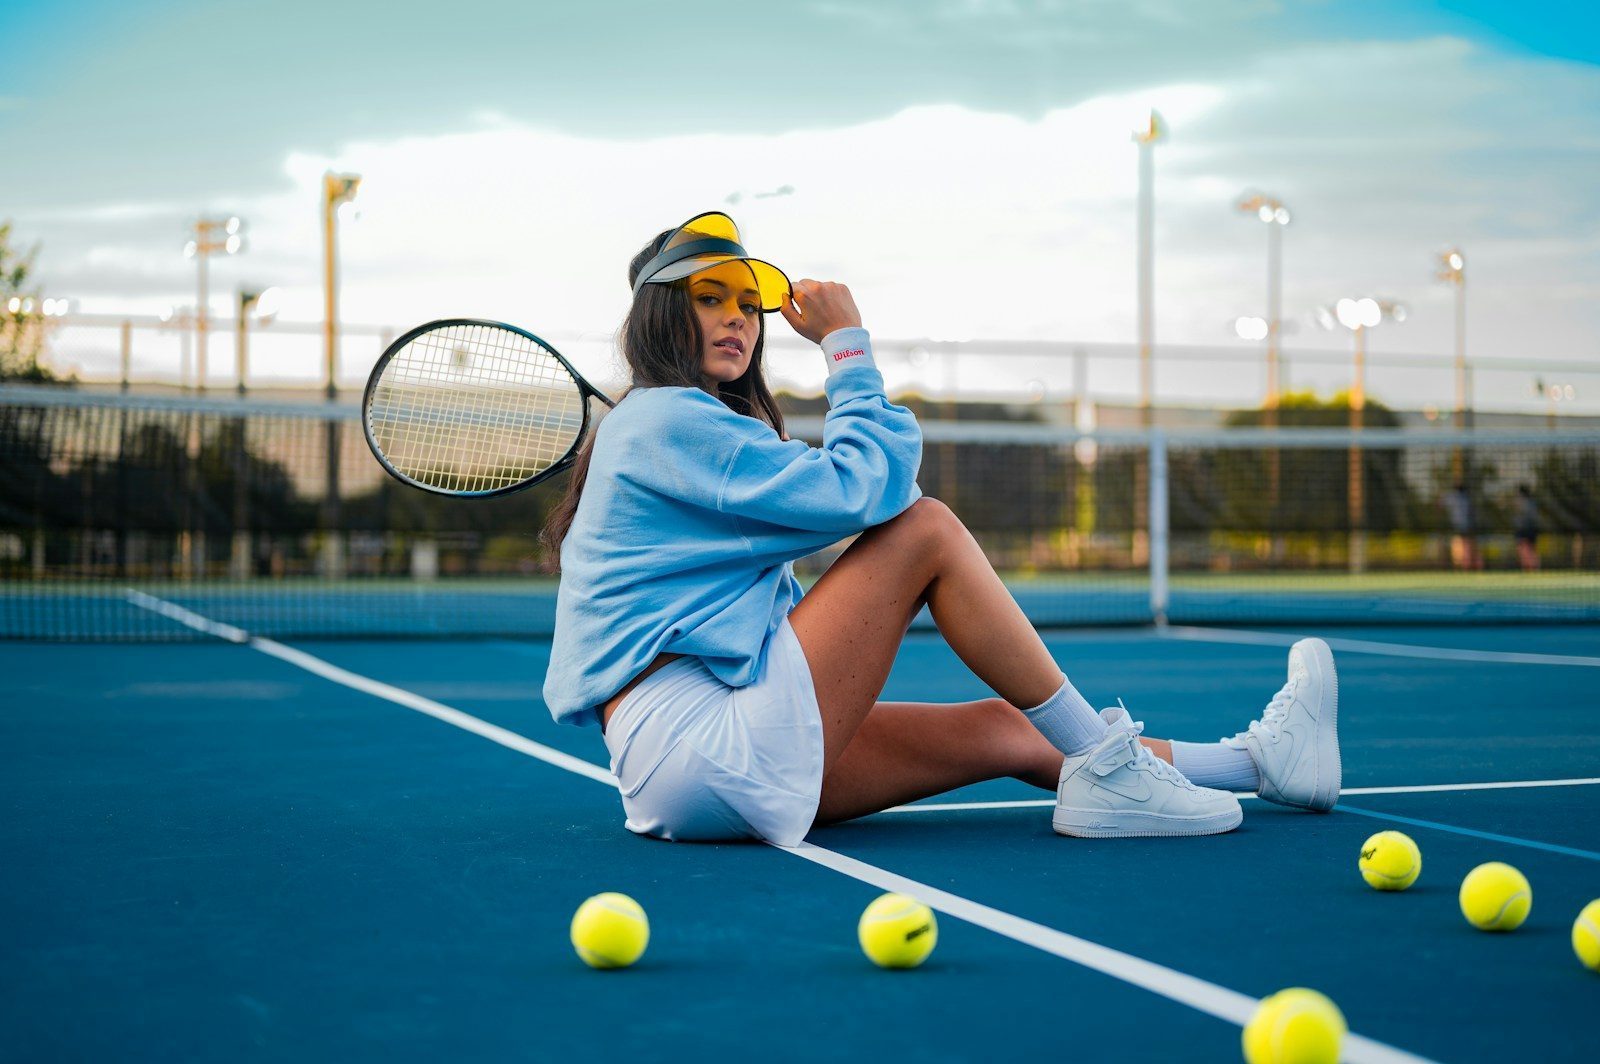 Mujer en una cancha de tenis sintética azul con gorra, falda y raqueta de tenis en mano y sentada en el suelo junto a pelotas de tenis.